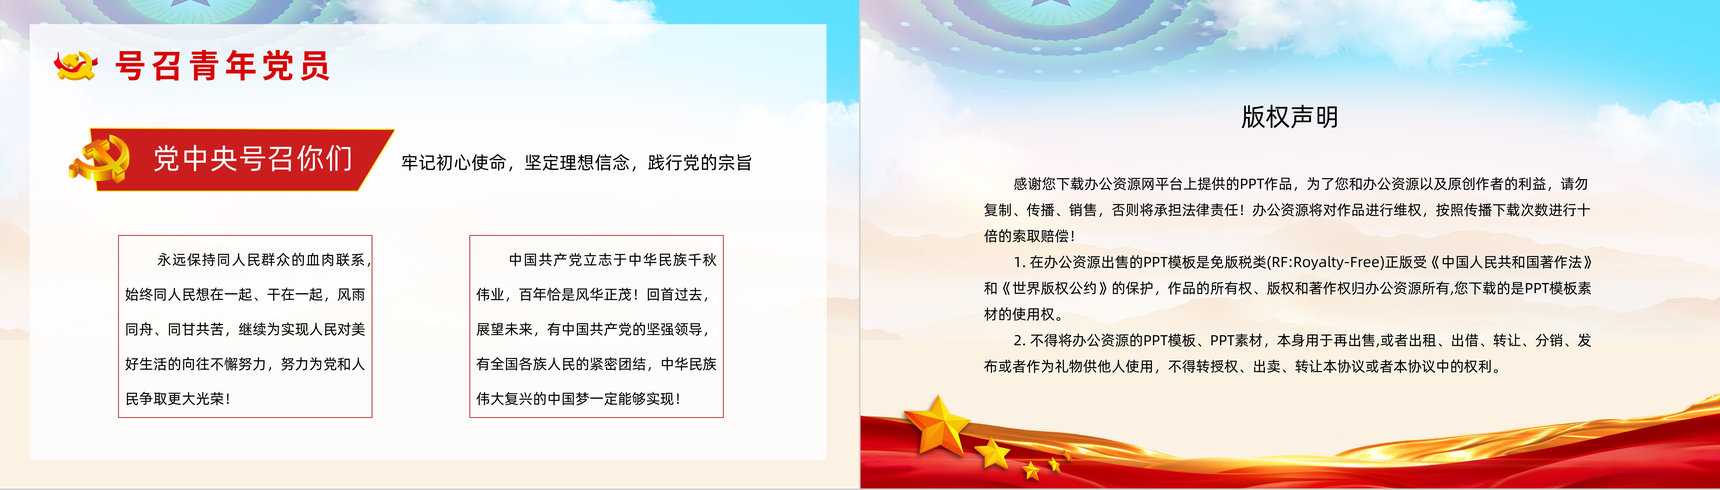 中国共产党百年辉煌宣传建党一百周年大会讲话精神解读学习动员大会PPT模板-10